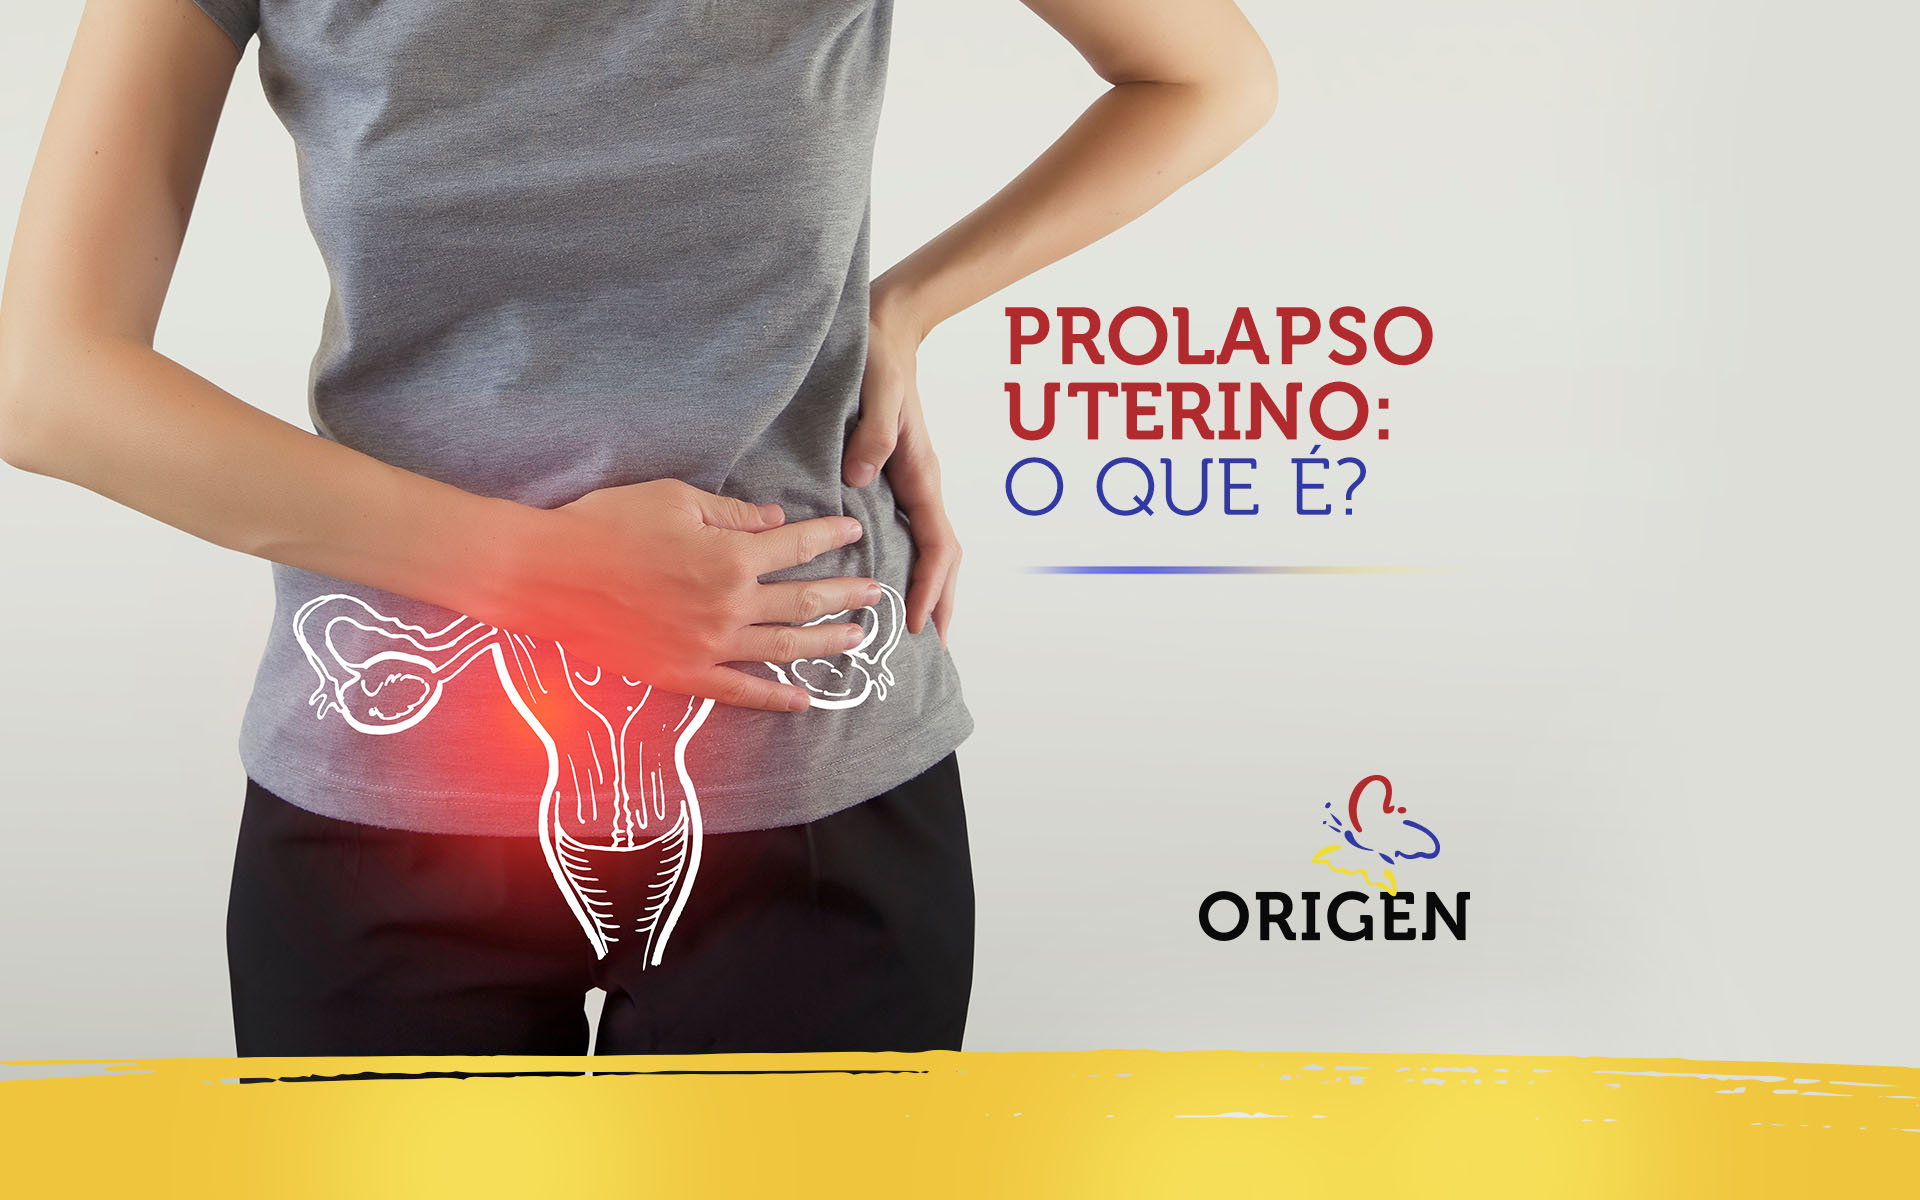 Prolapso uterino: o que é?